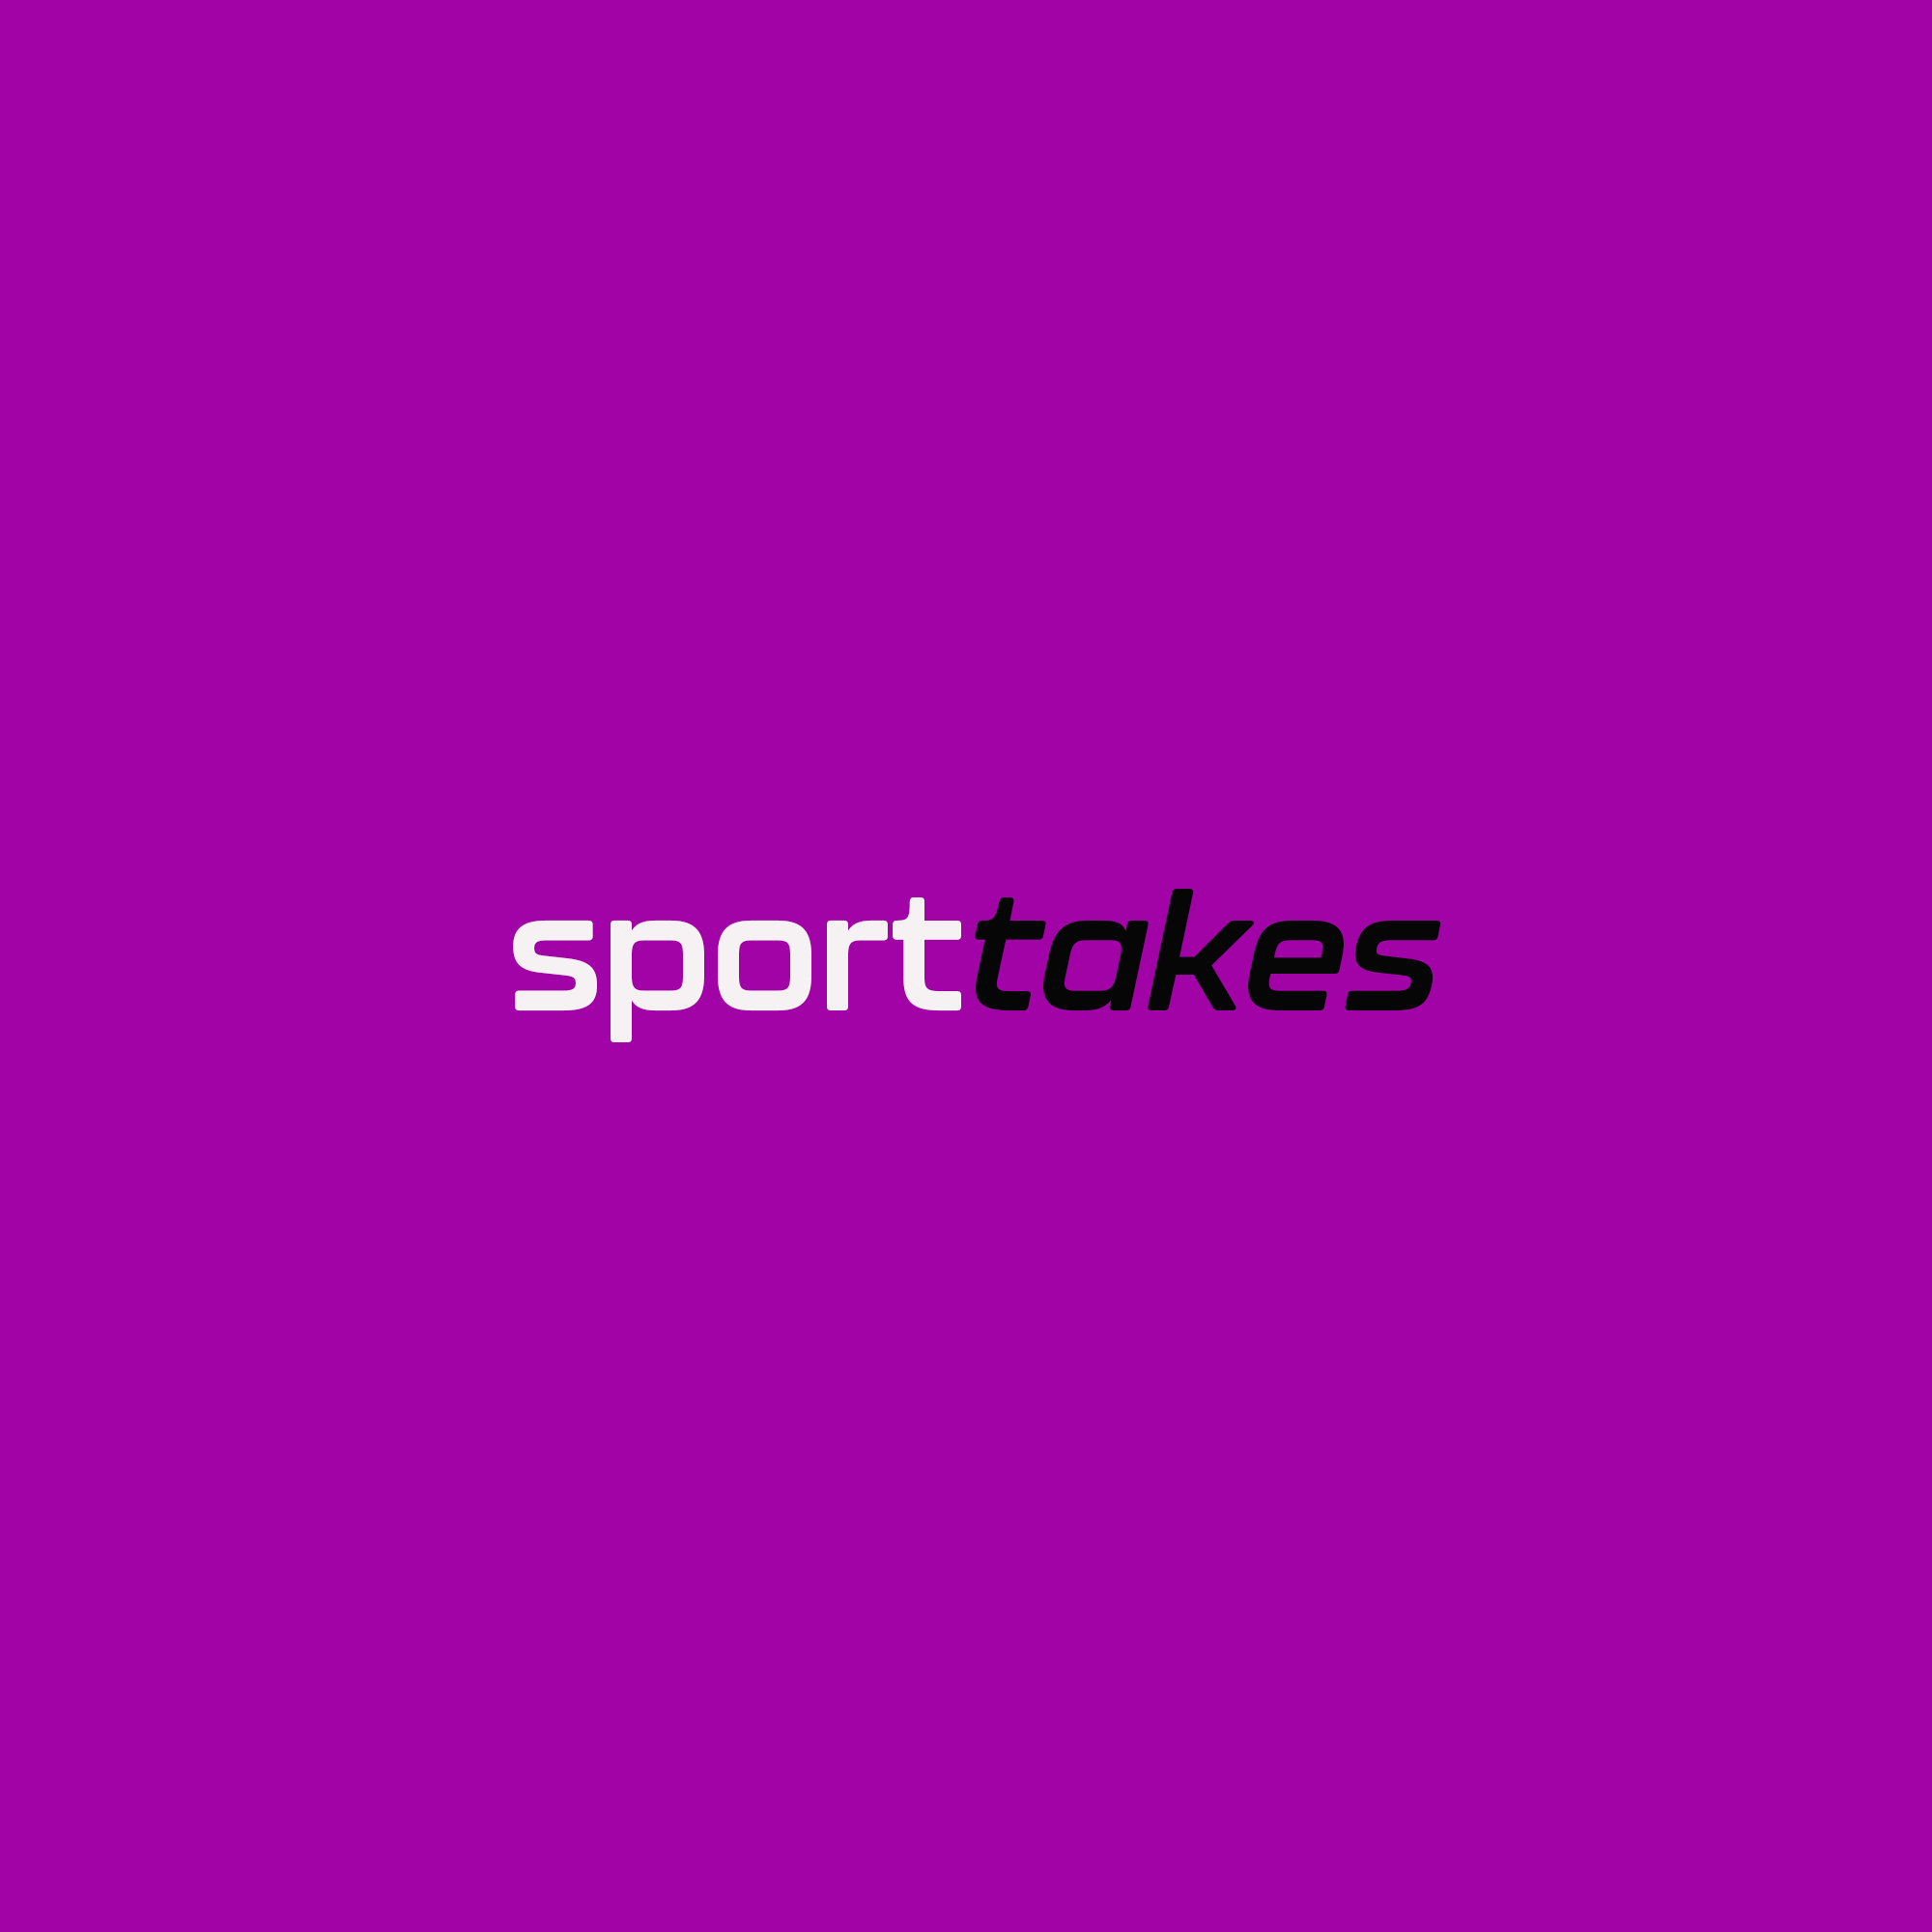 Vorgestellt: sporttakes – Der Sportpodcast für alle